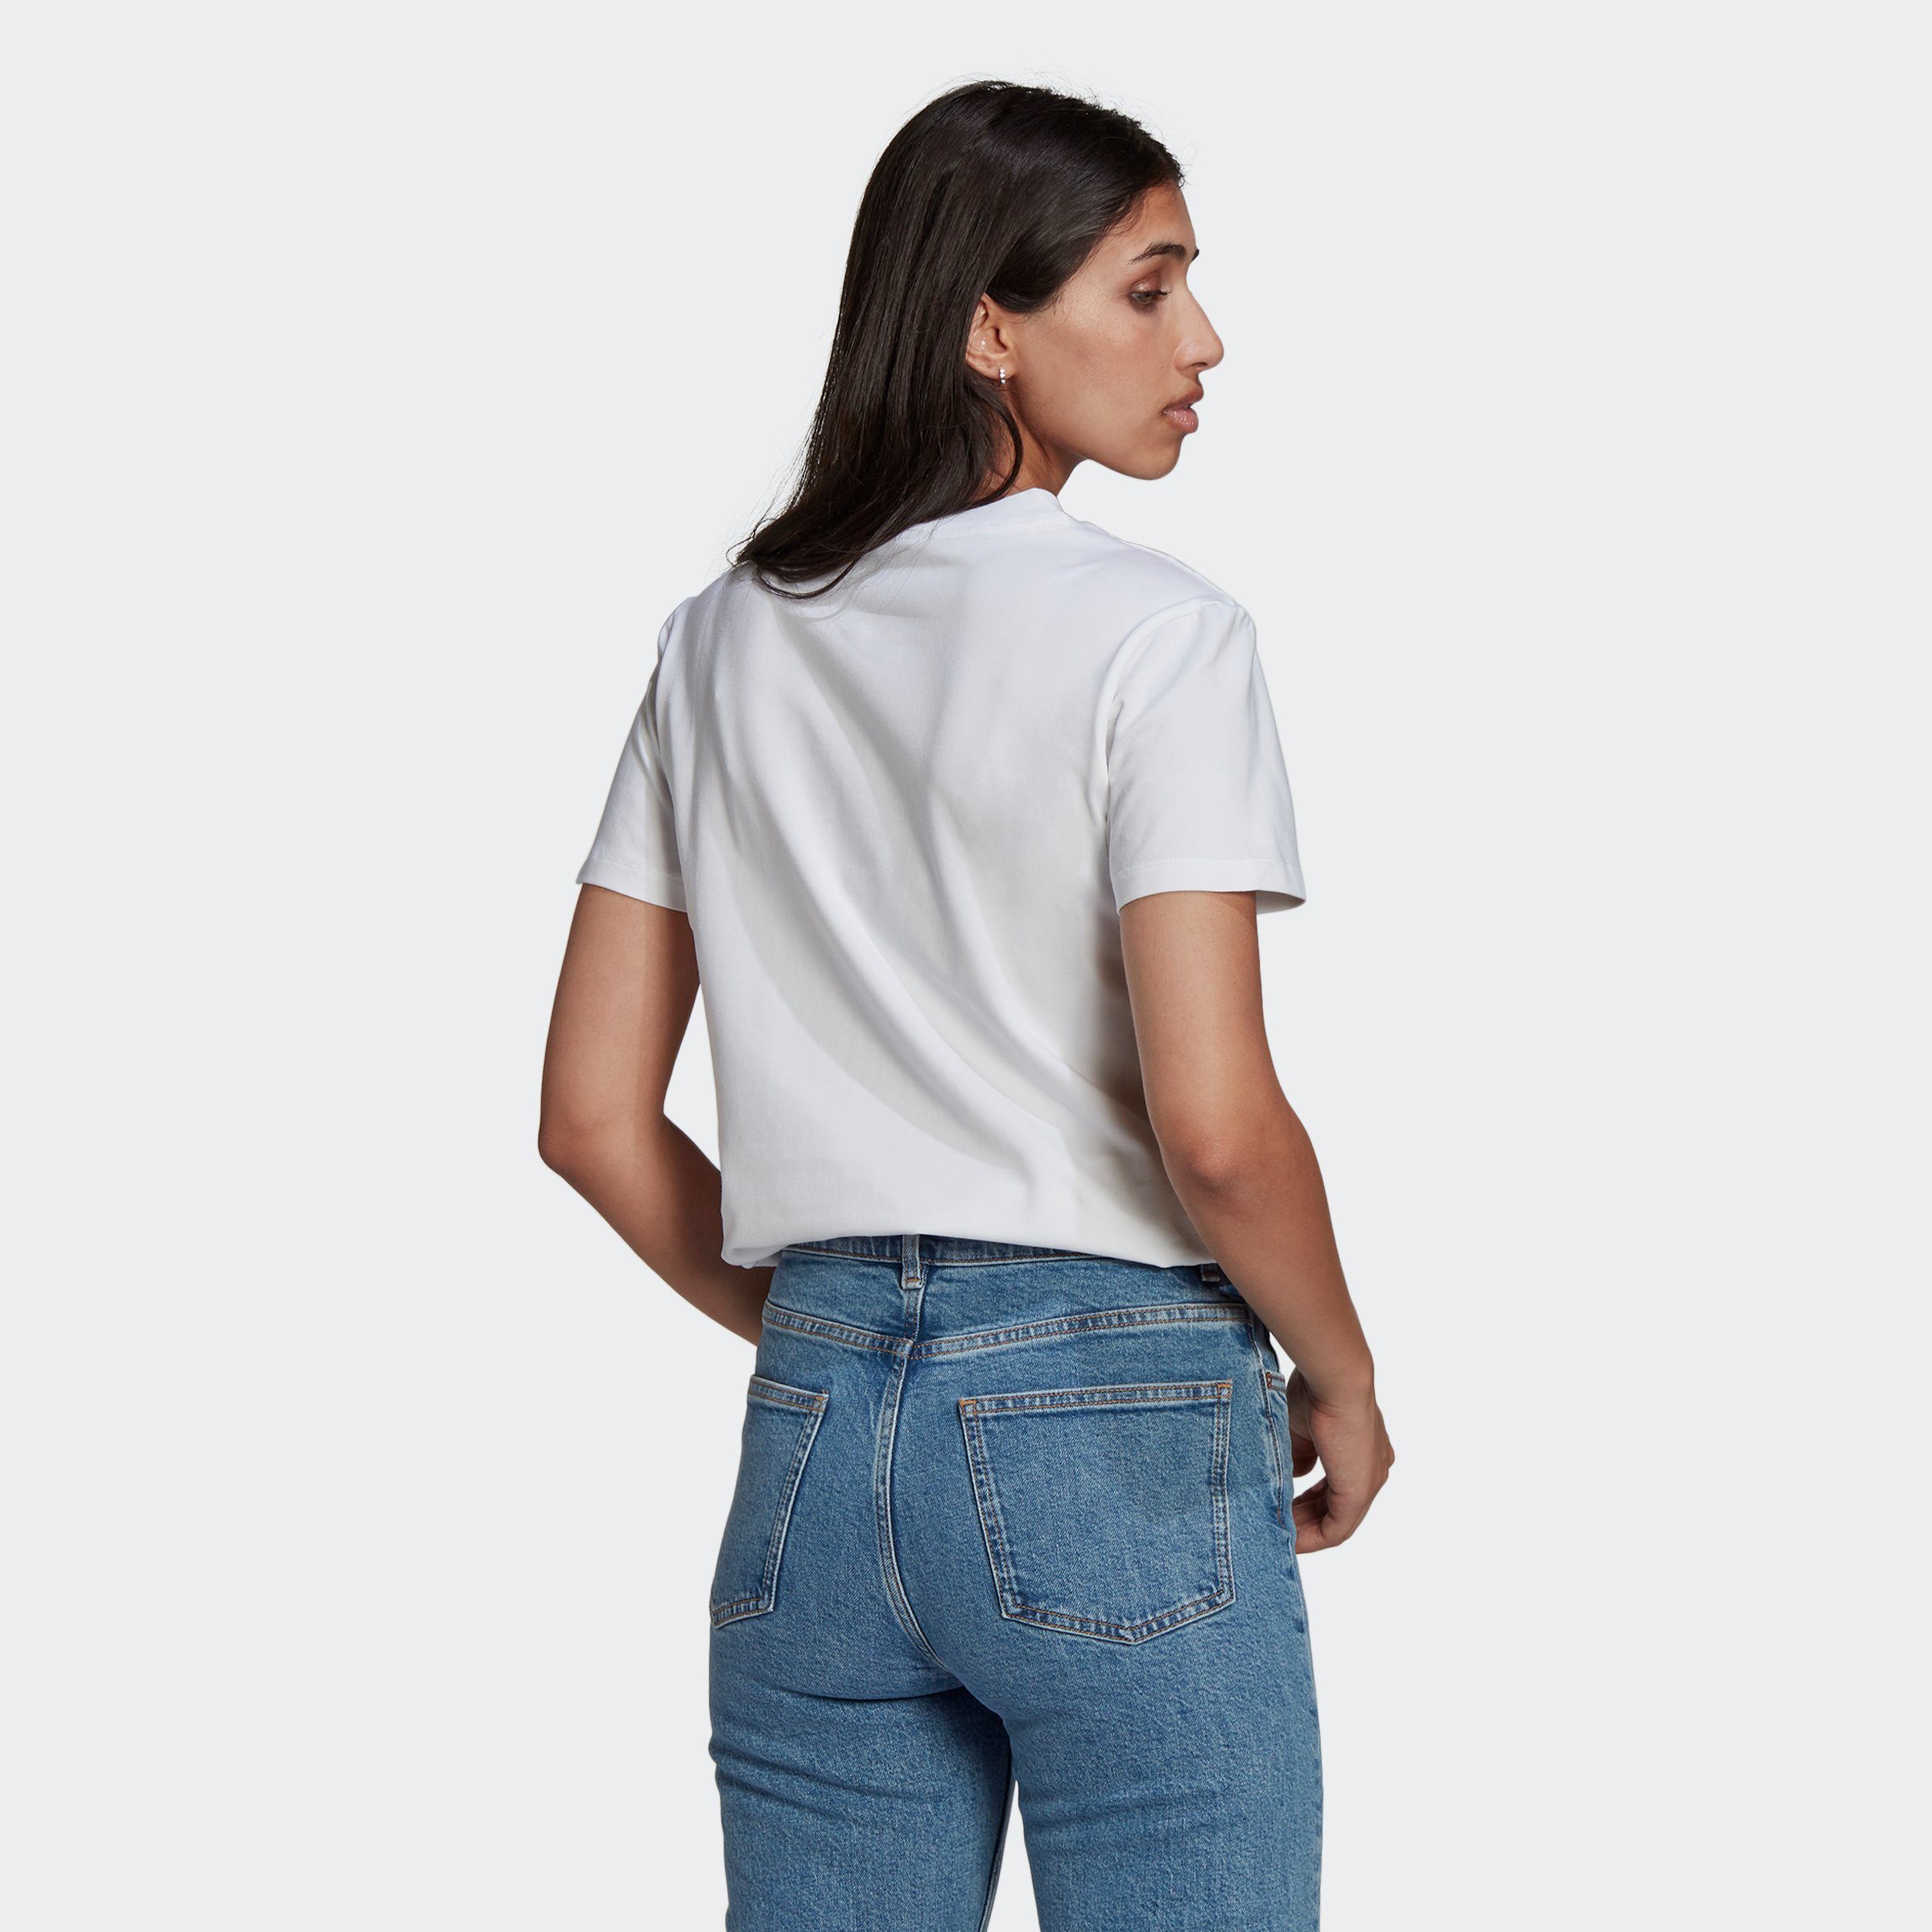 T-Shirt ADICOLOR TREFOIL Originals WHITE adidas CLASSICS